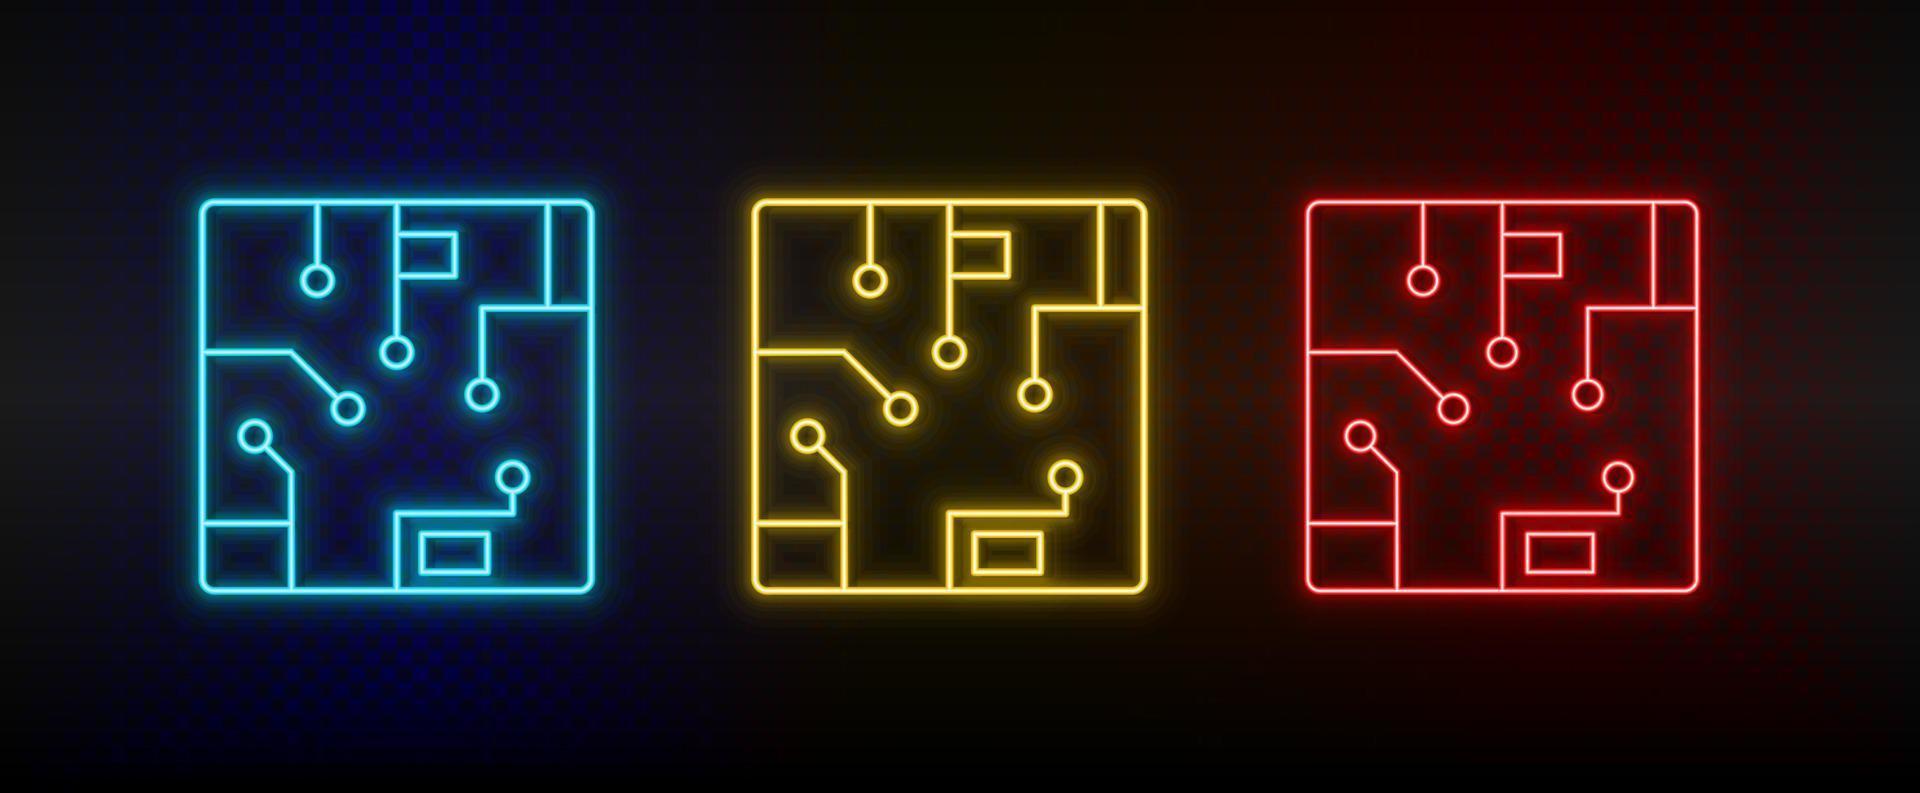 iconos de neón. computadora de chips conjunto de icono de vector de neón rojo, azul, amarillo sobre fondo oscuro